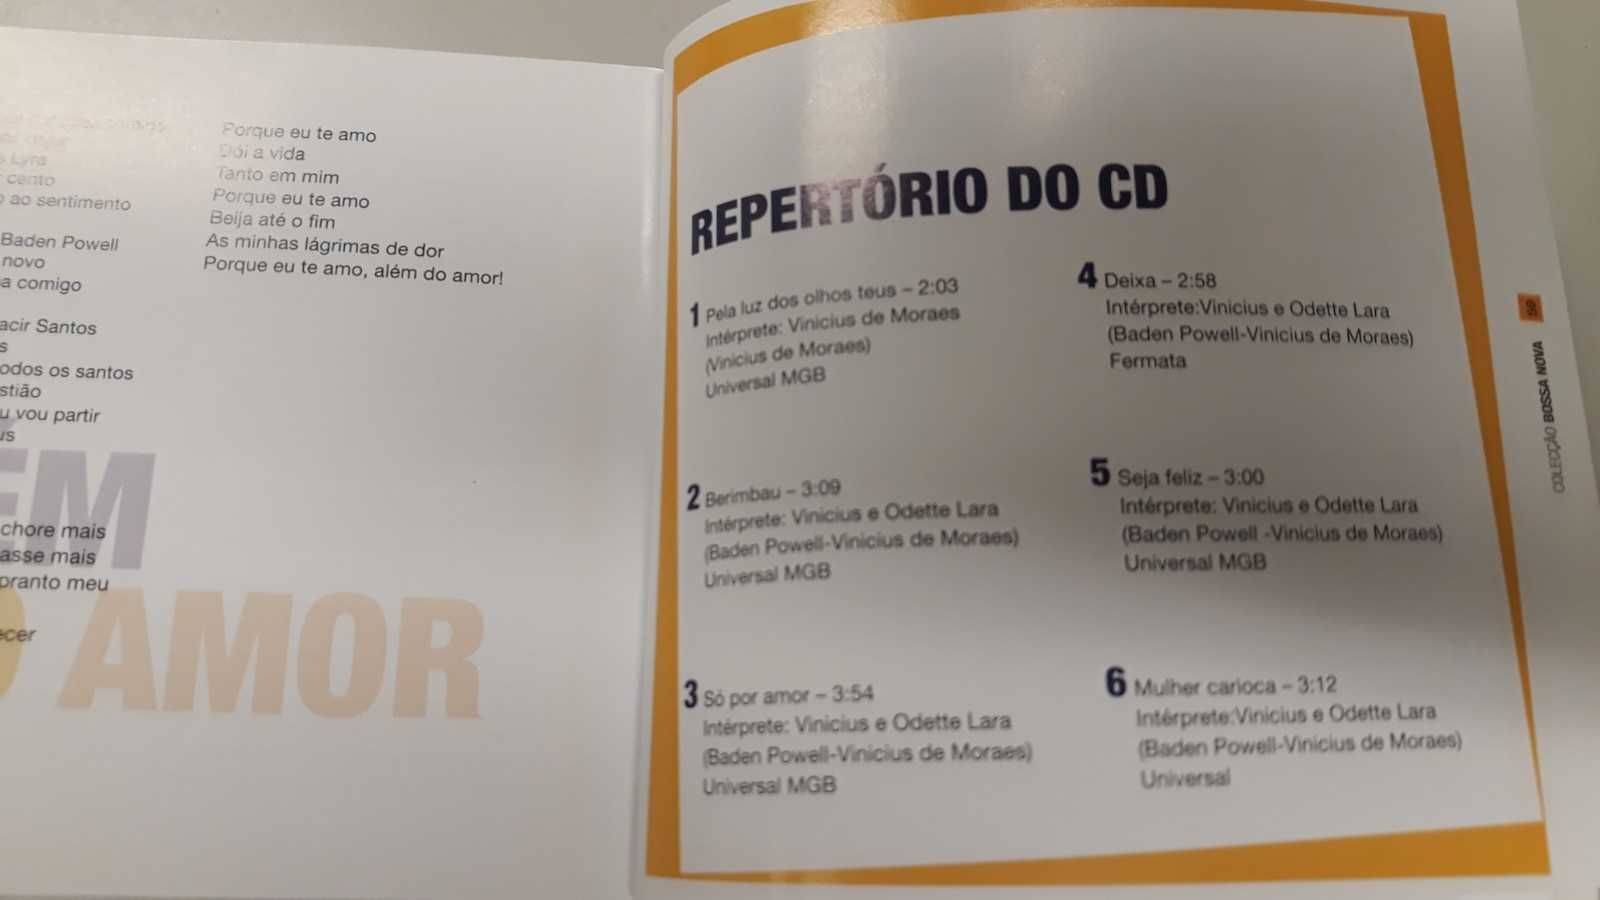 Colecção Bossa Nova (16 CD e 16 Livros)